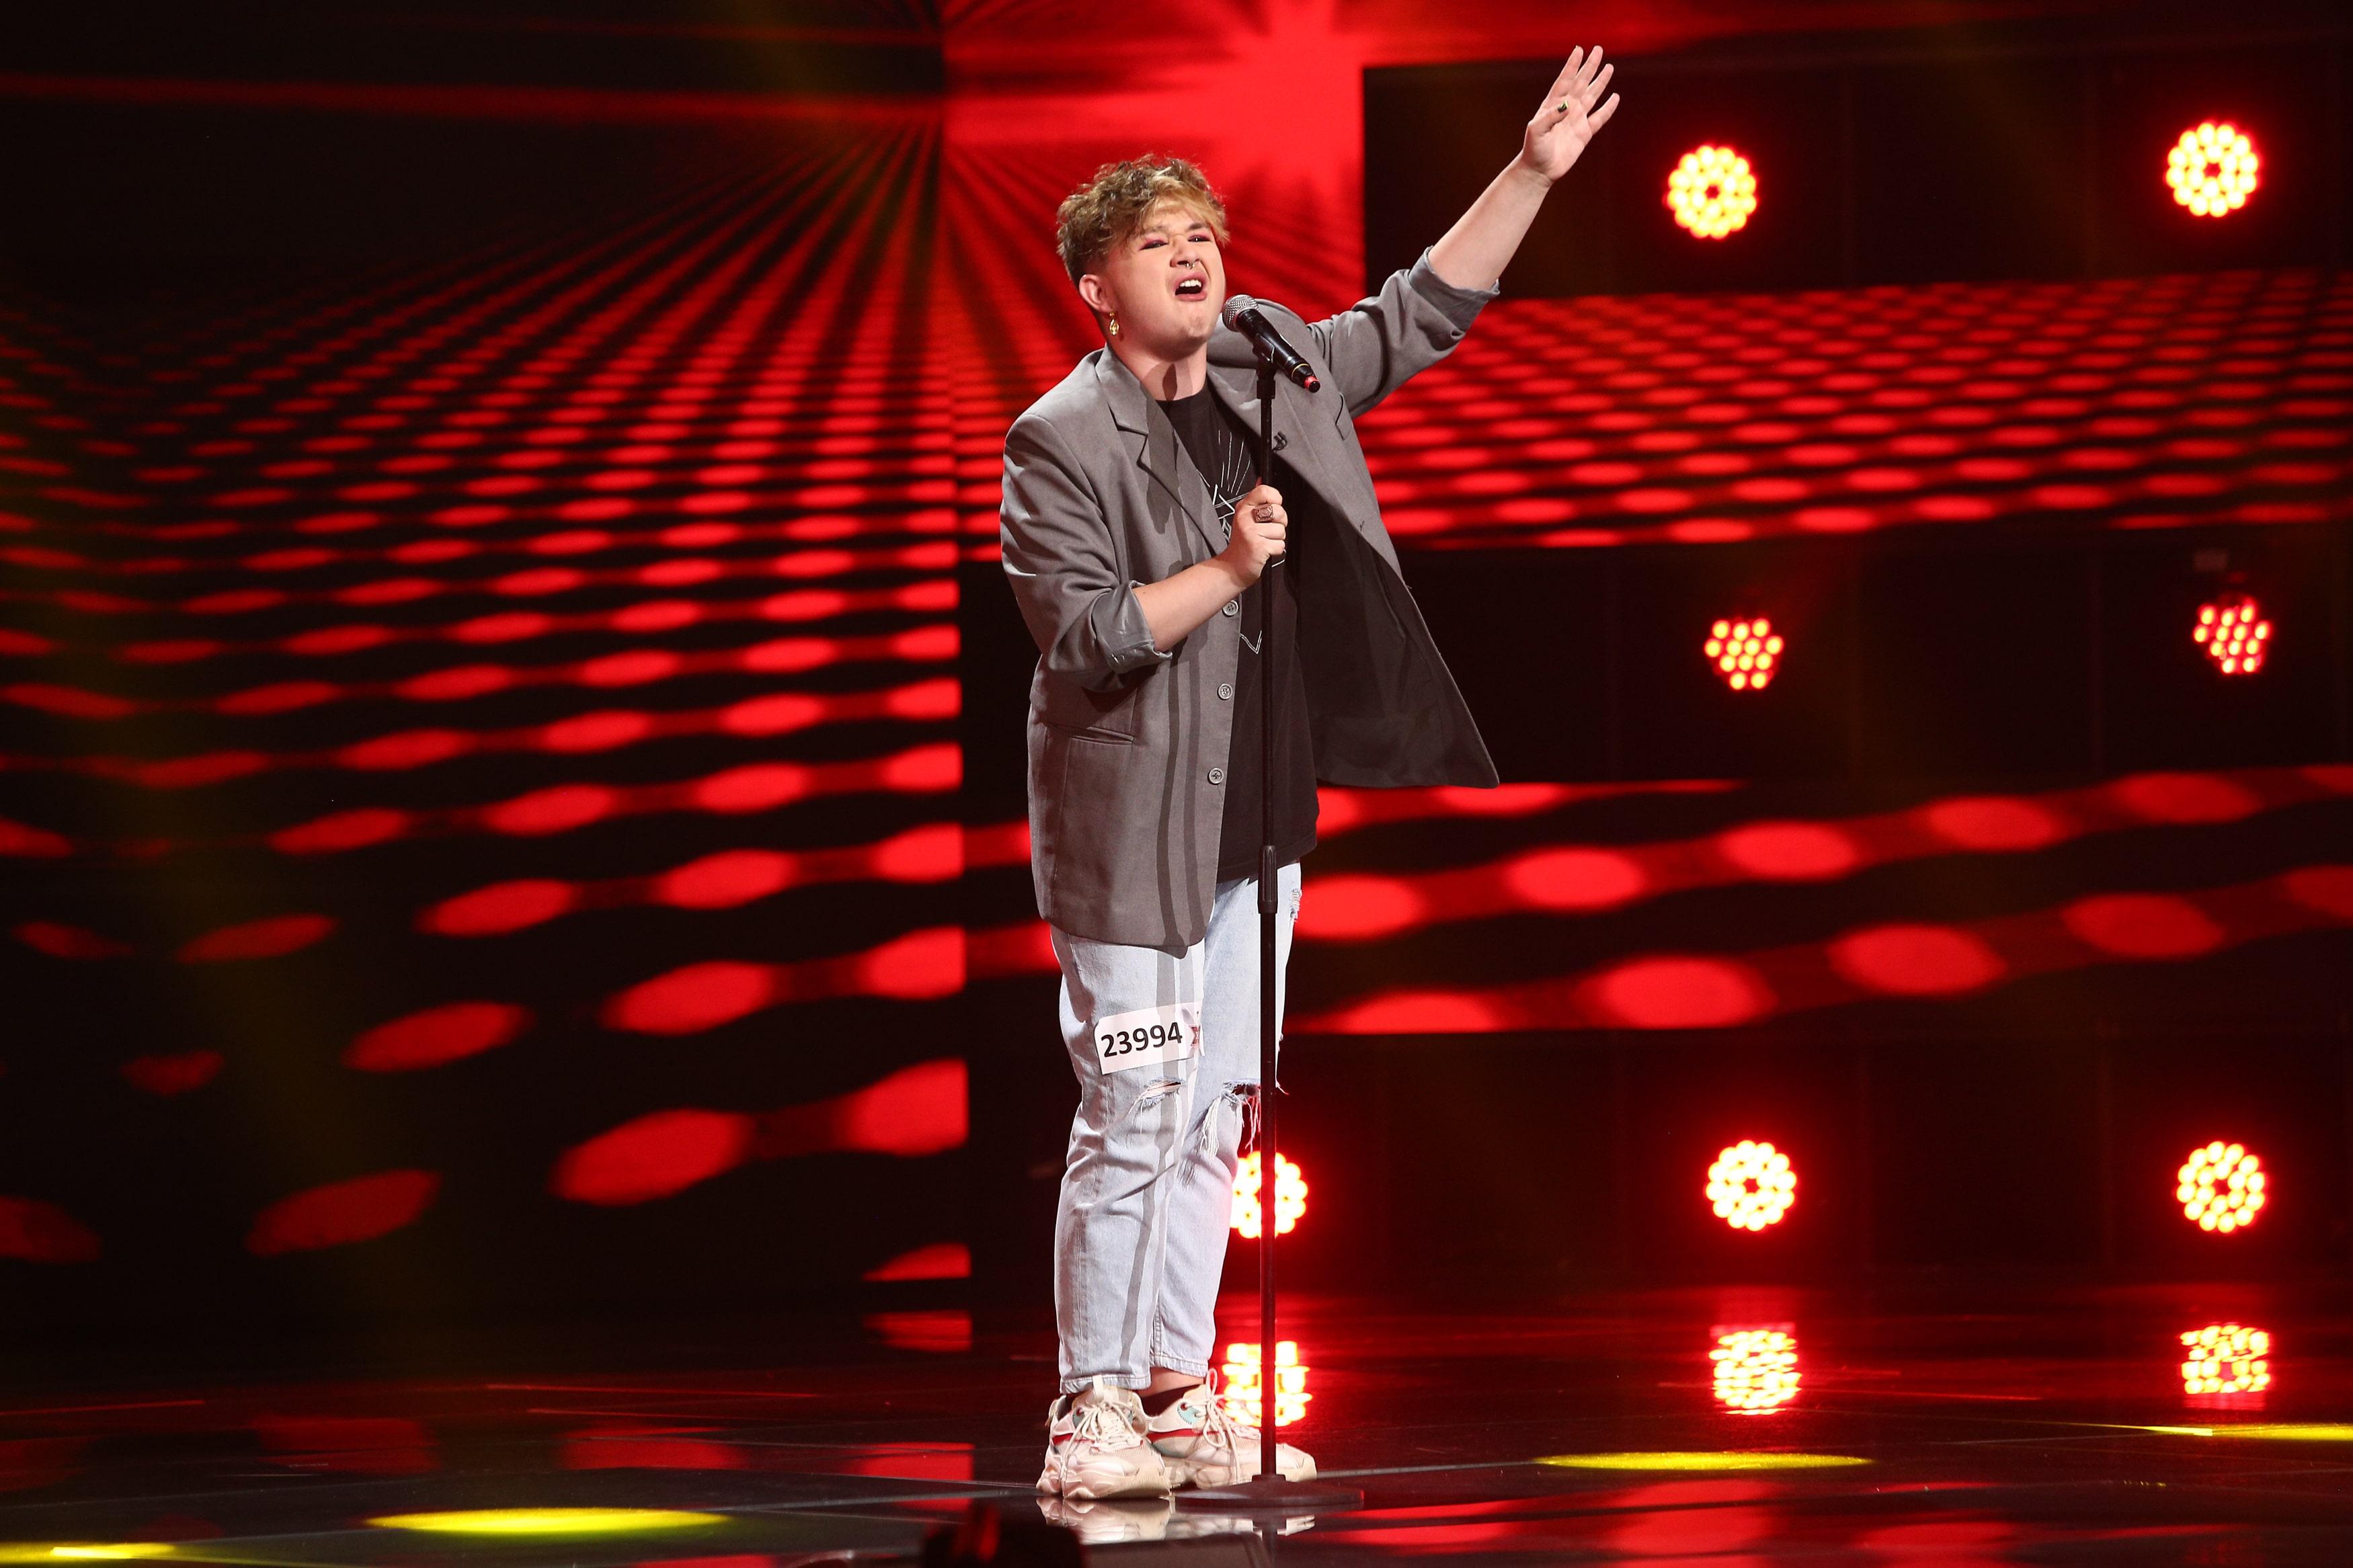 Ionuț Hanțig a impresionat juriul cu interpretarea piesei Proud Mary de la Tina Turner la X Factor 2021